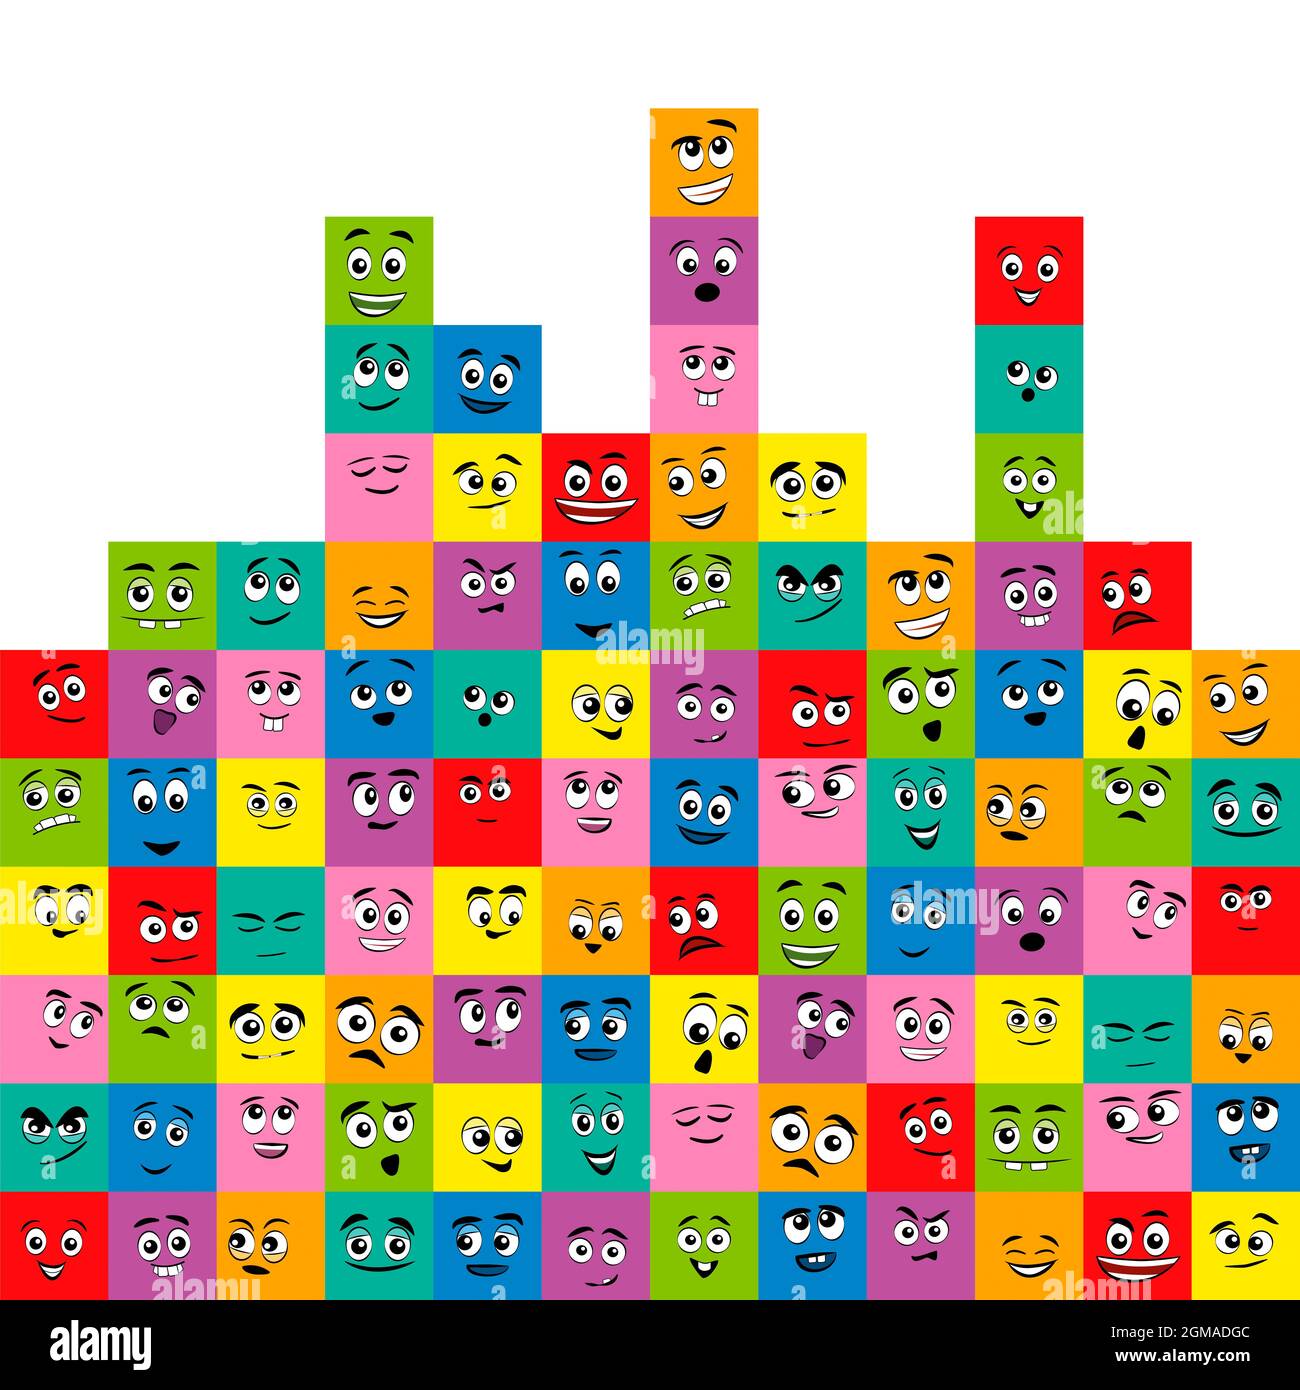 Farbige Quadrate mit verschiedenen Comic-Gesichtern - glücklich, lustig, traurig, mürrisch, verängstigt, Freundlich, neugierig. Finden Sie die gleichen Paare mit gleichen Farben und Ausdruck. Stockfoto